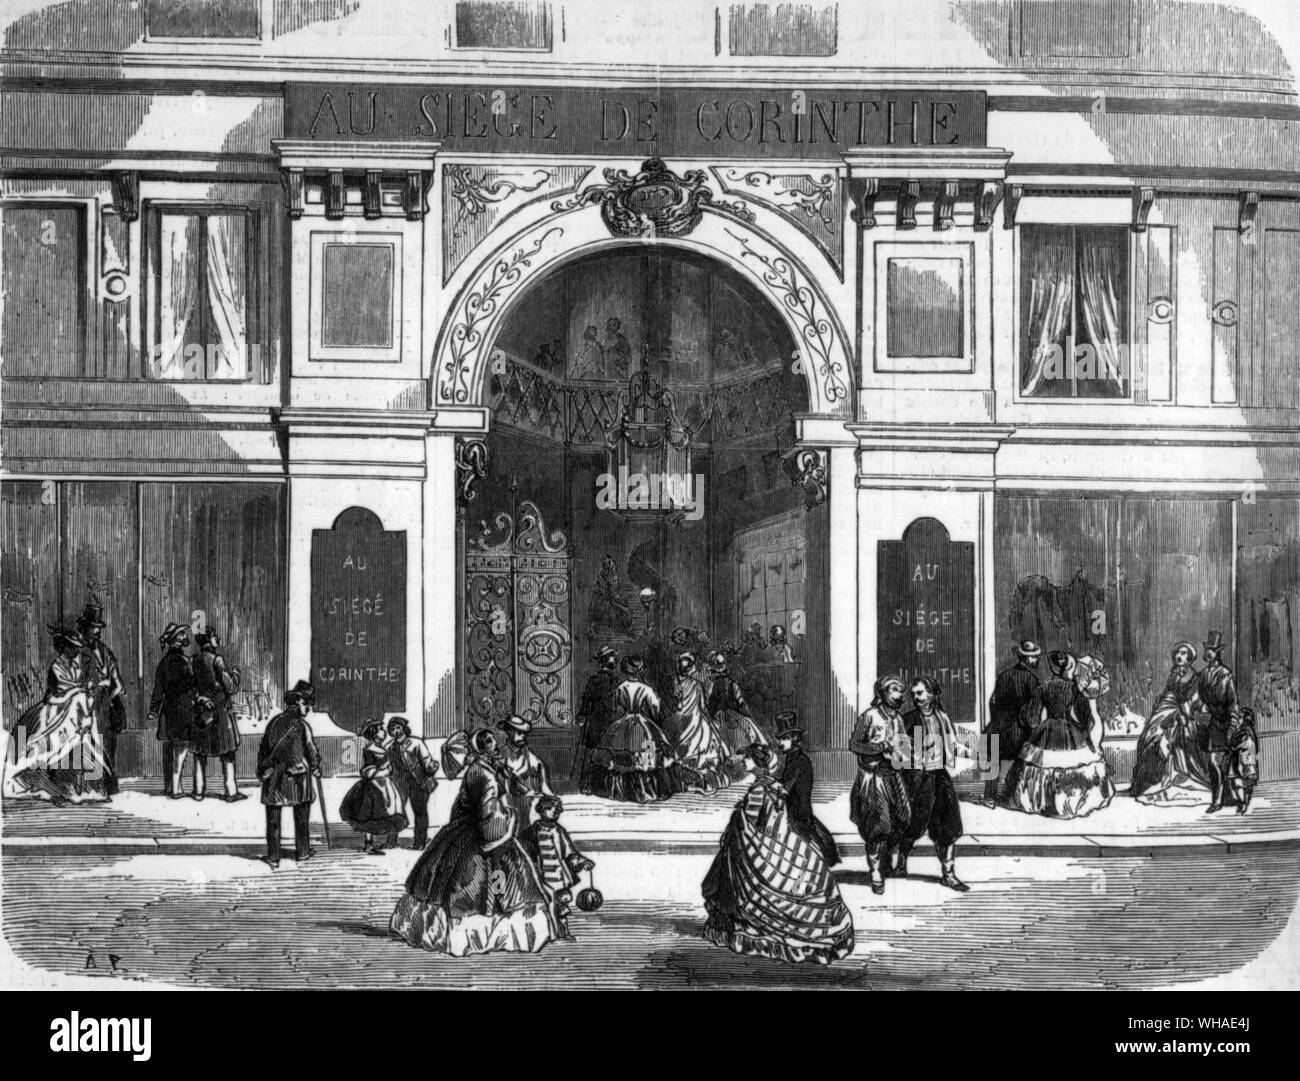 Da L'illustrazione 8 ottobre 1859. Il nuovo gateway in Paris department store siege de Corinthe Foto Stock